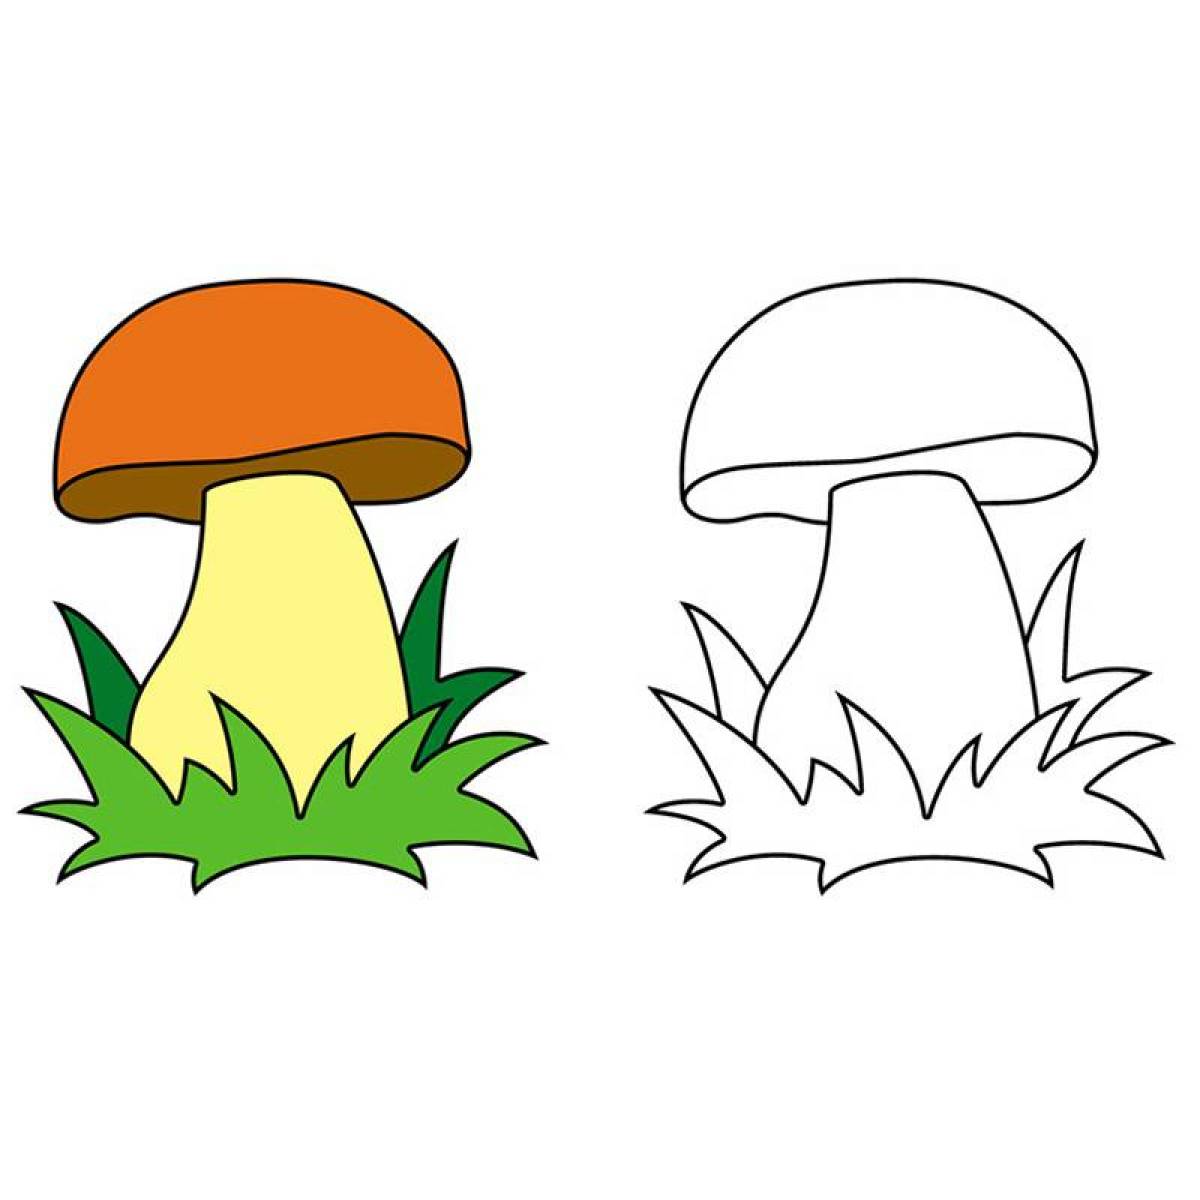 Fun mushroom coloring book for kids